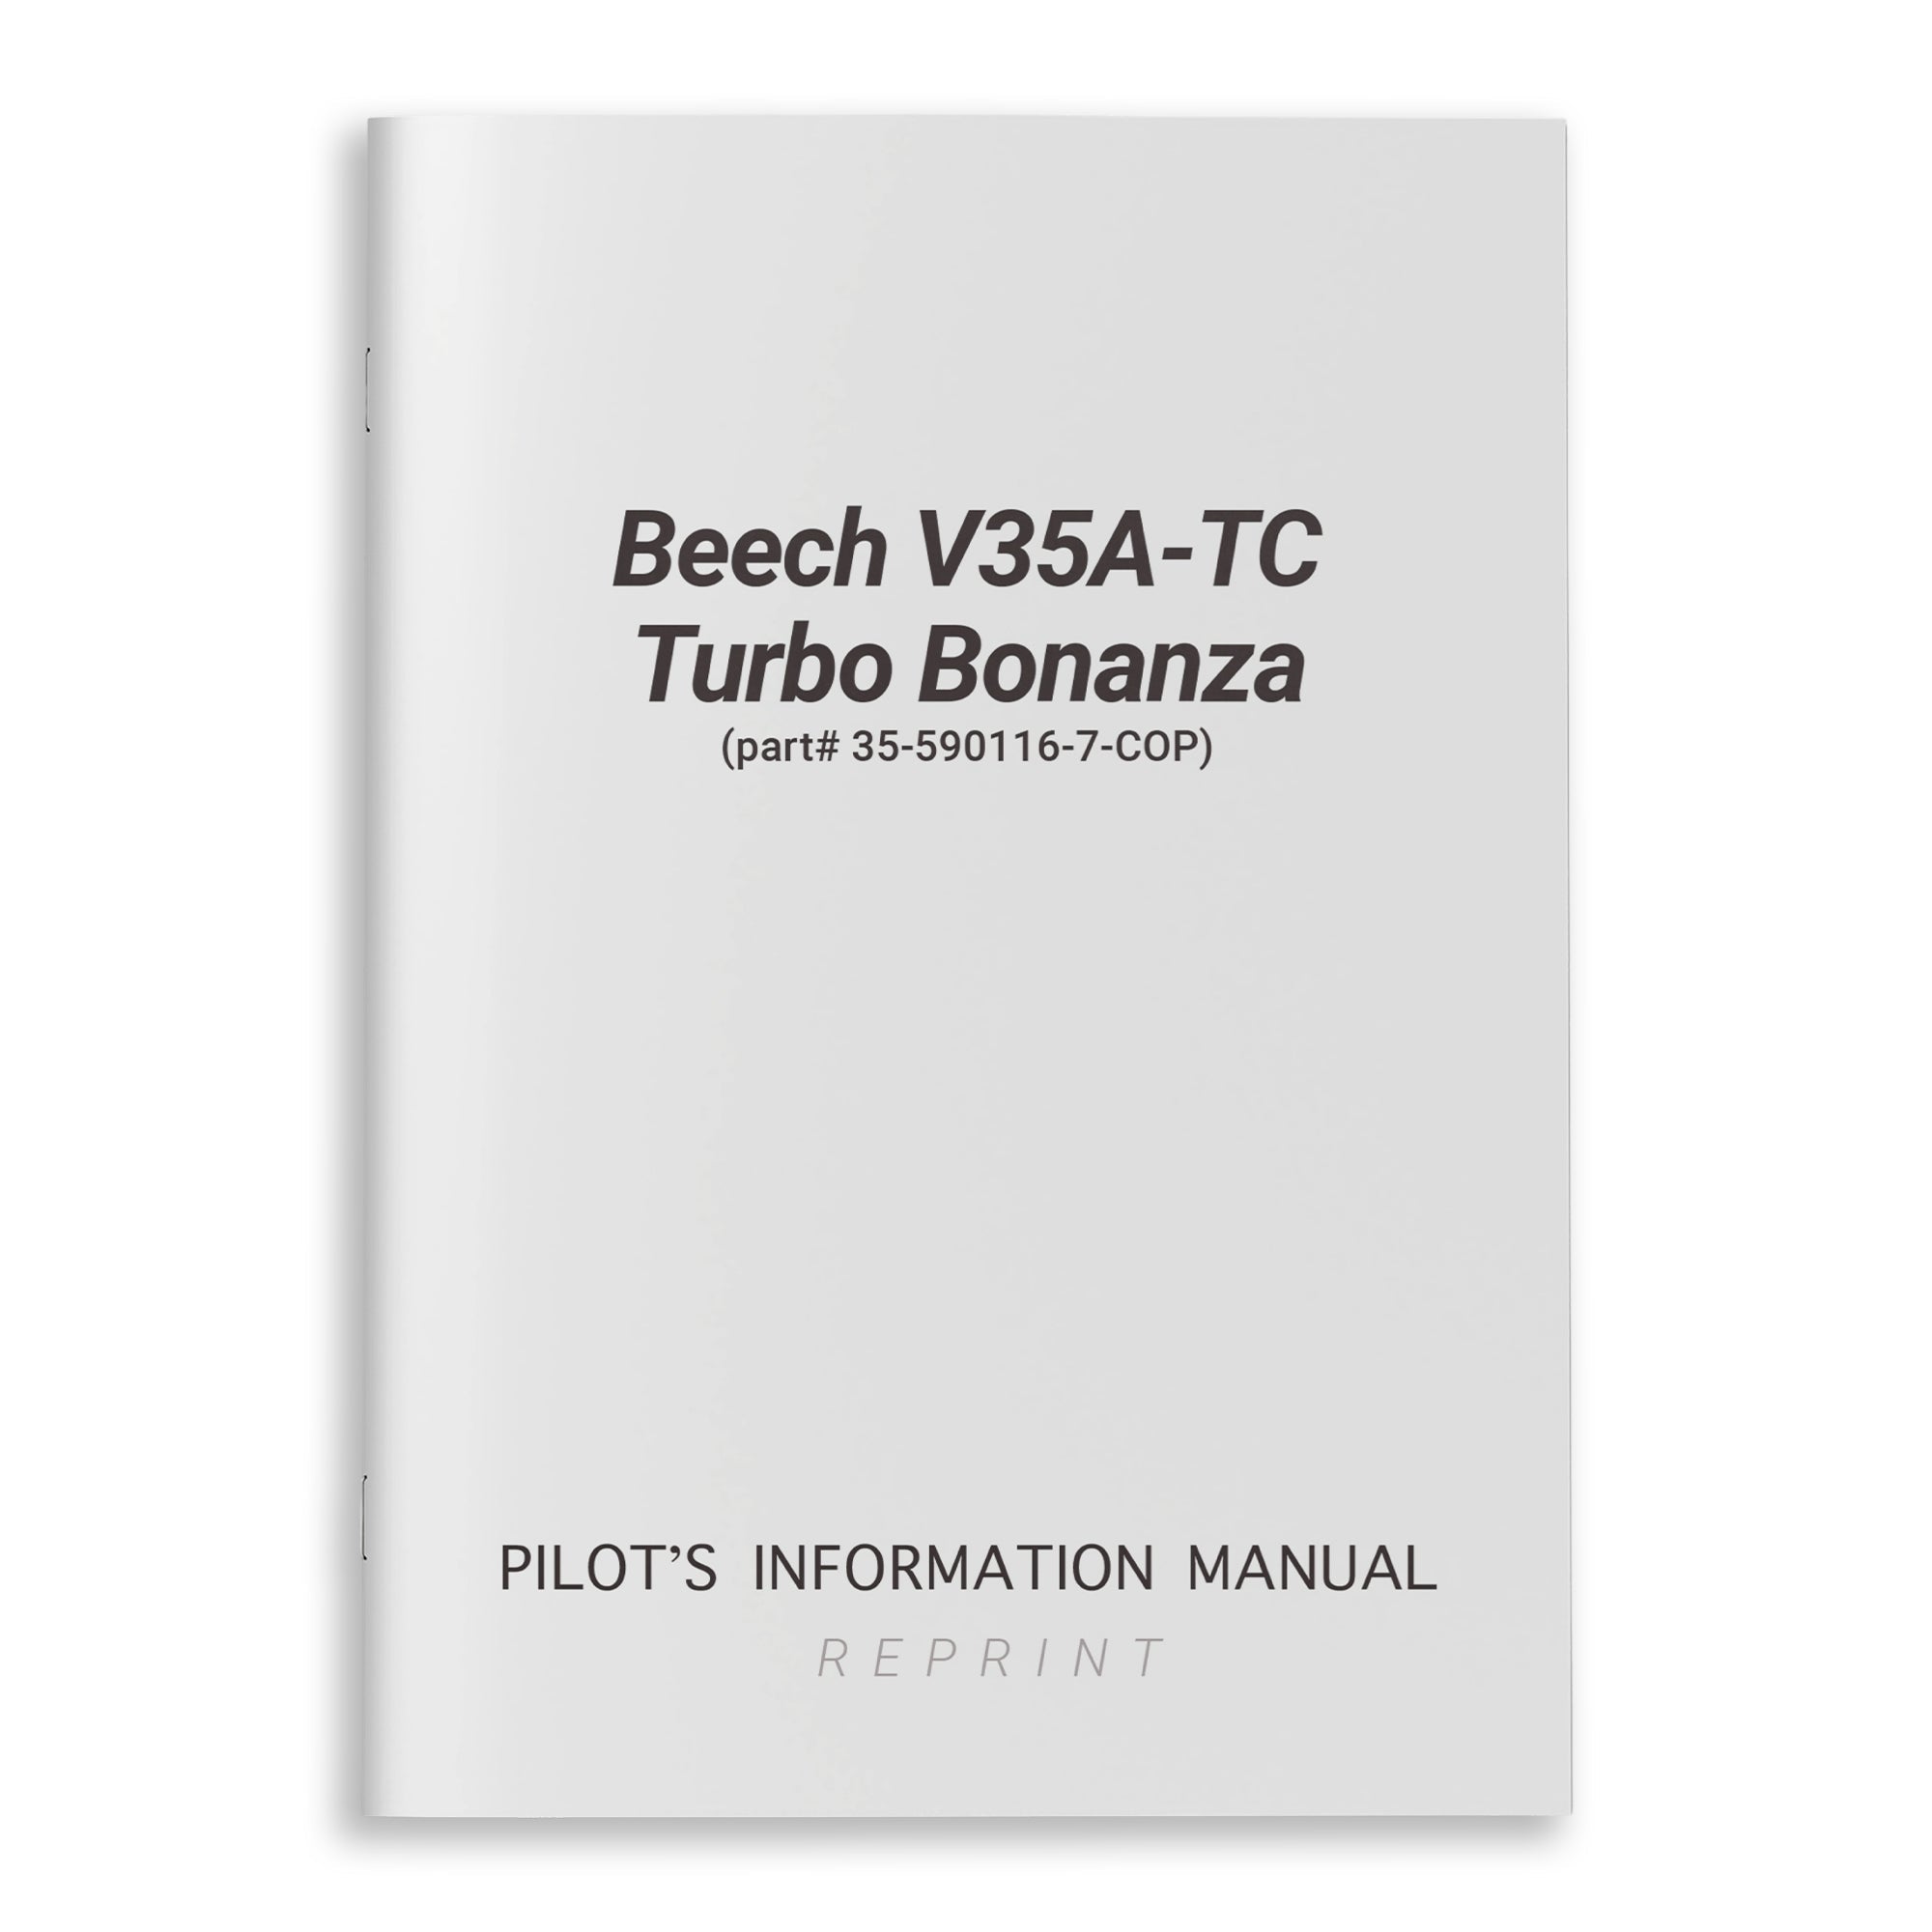 Beech V35A-TC Turbo Bonanza Owner's Manual (part# 35-590116-7-COP) - PilotMall.com